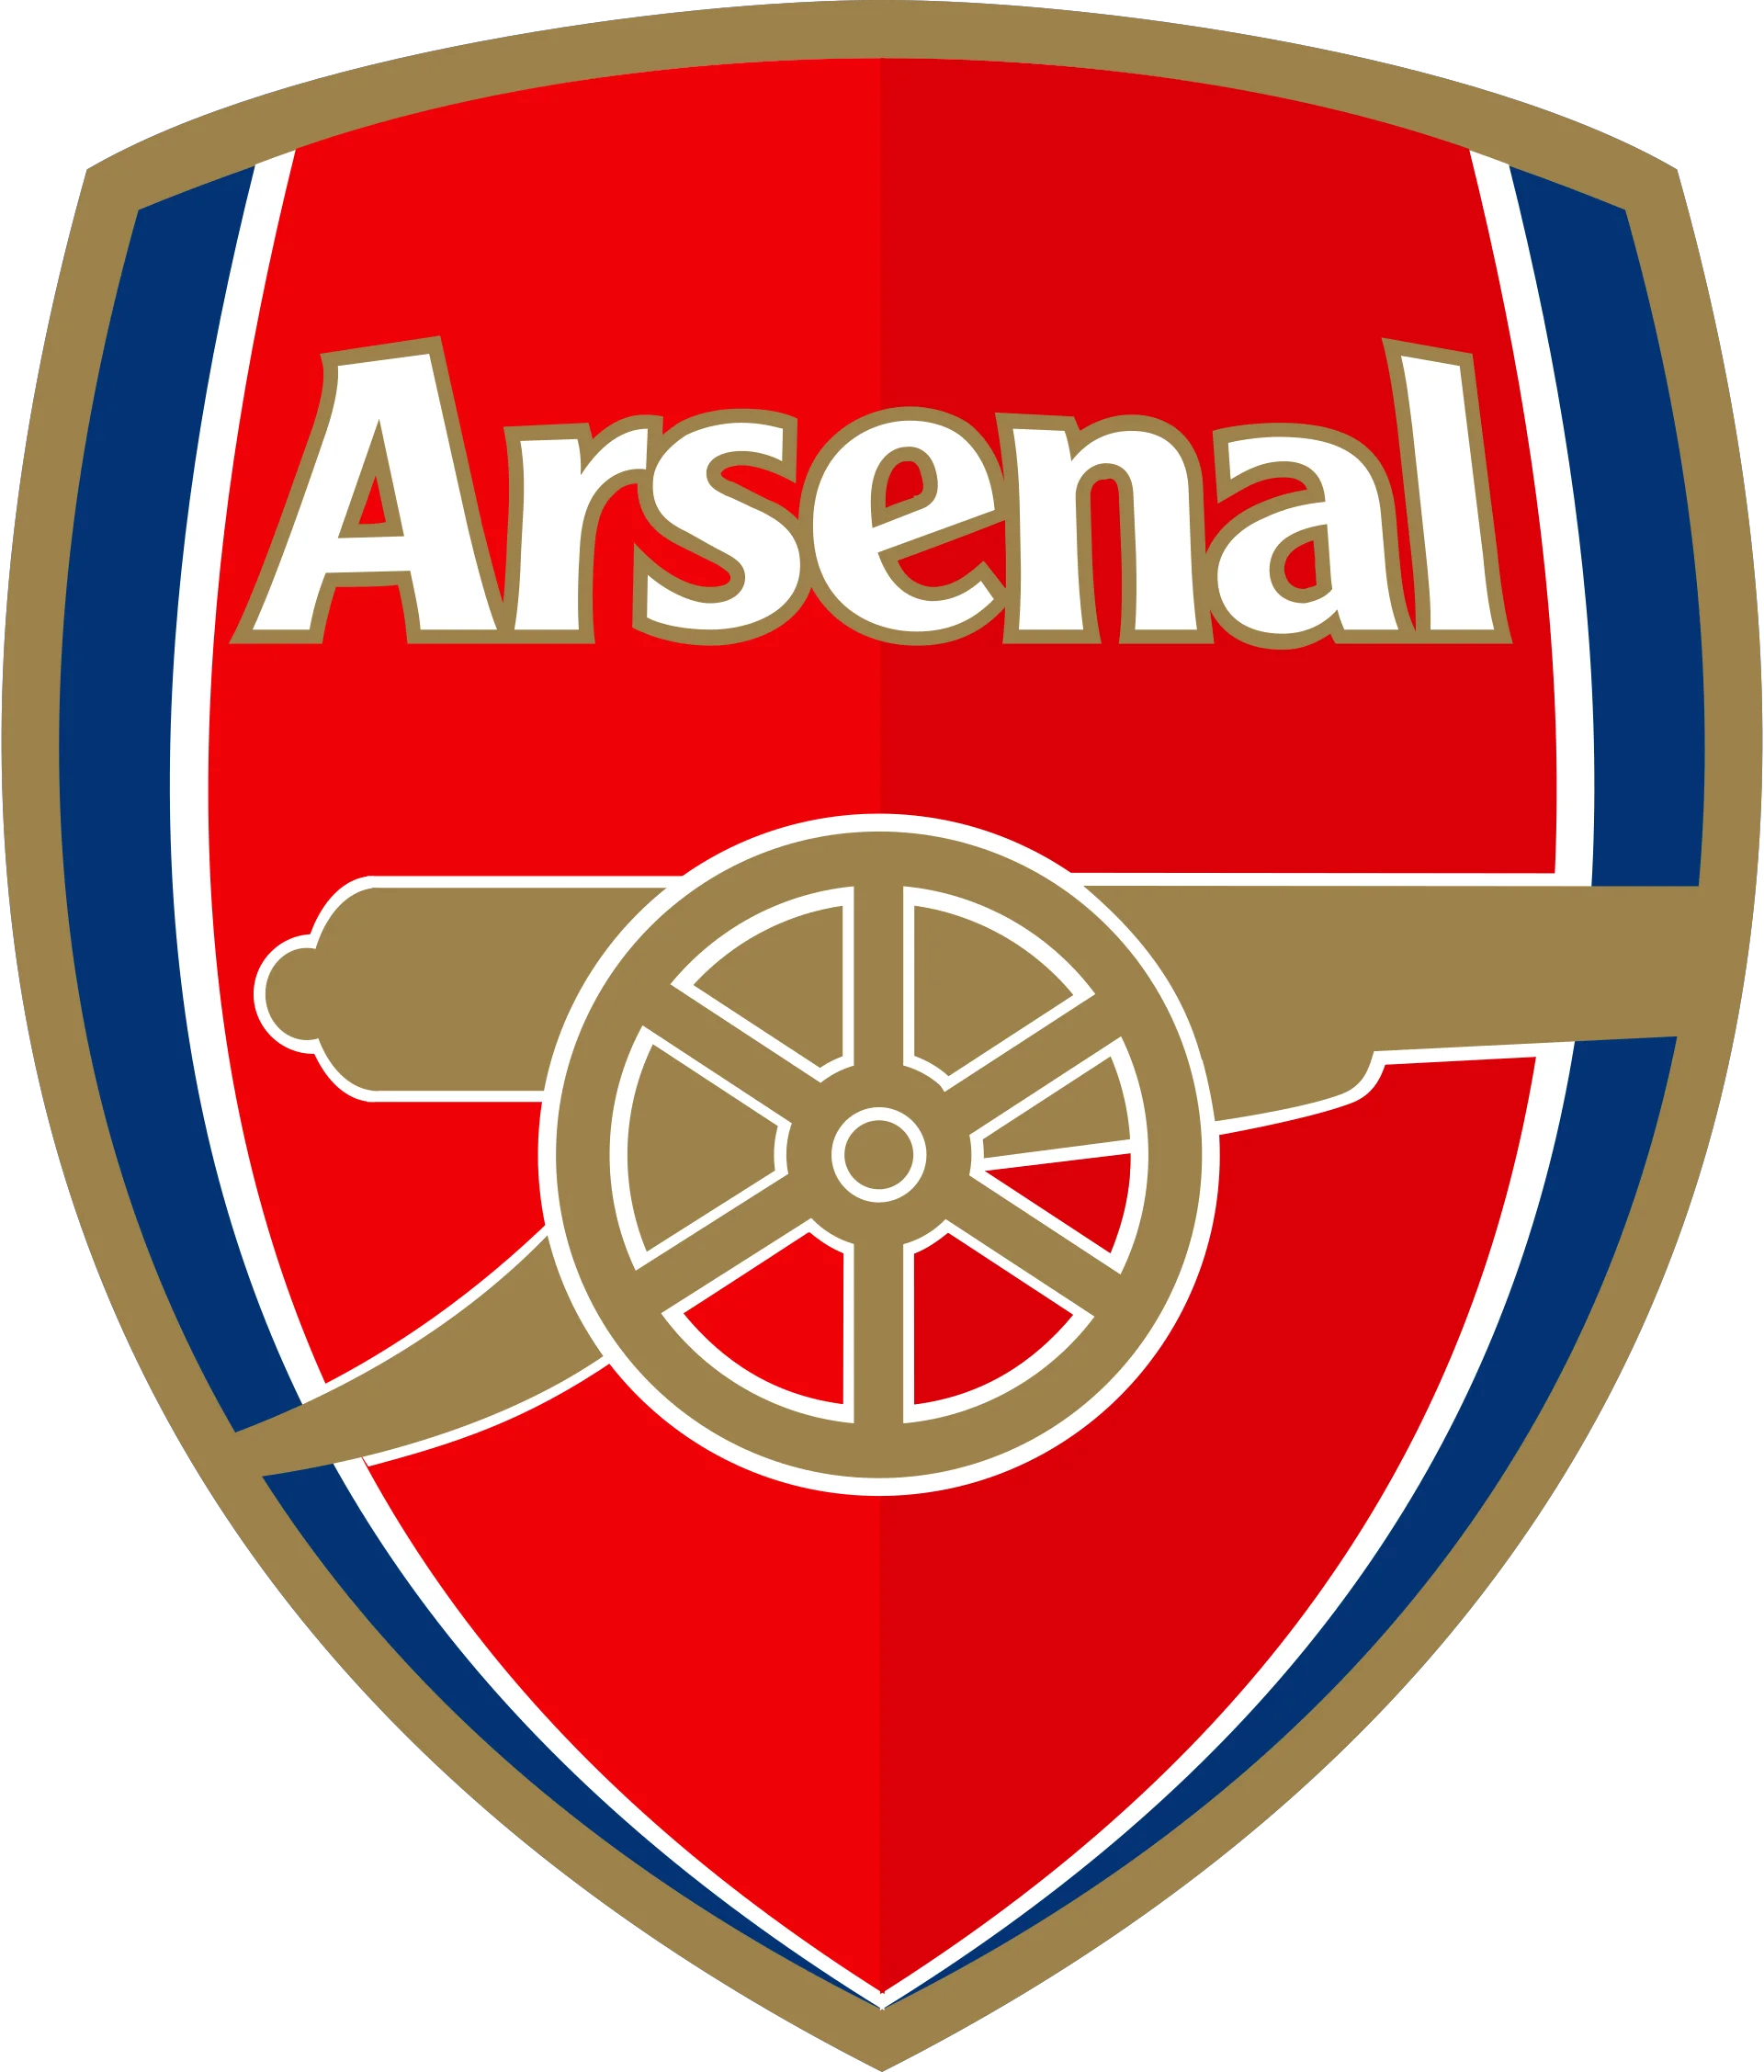 Arsenal_FC_sigla